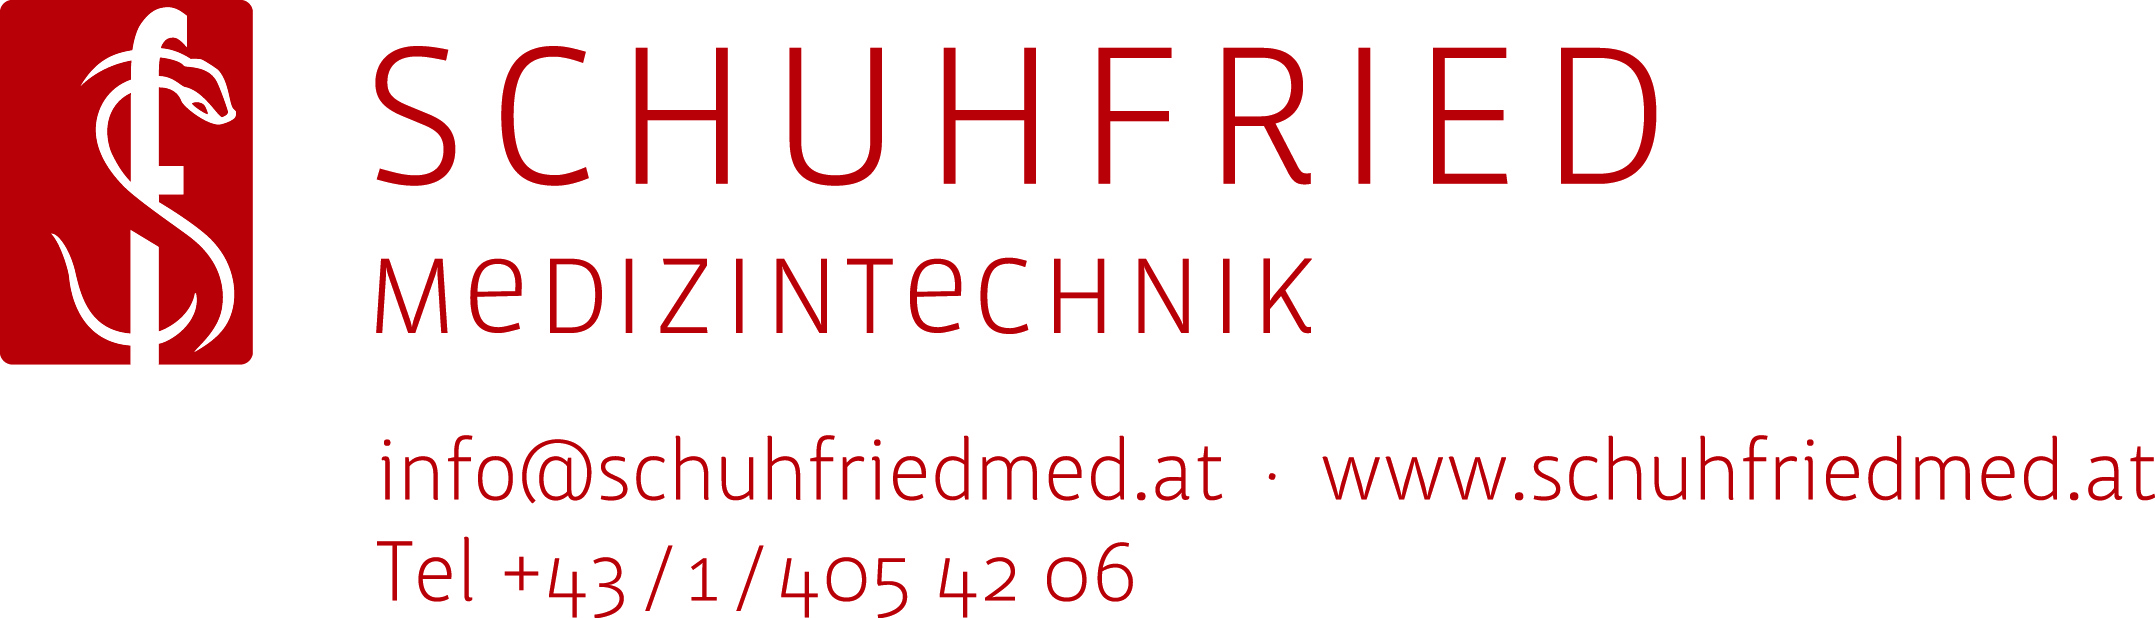 Dr. Schuhfried Medizintechnik GmbH, Wien